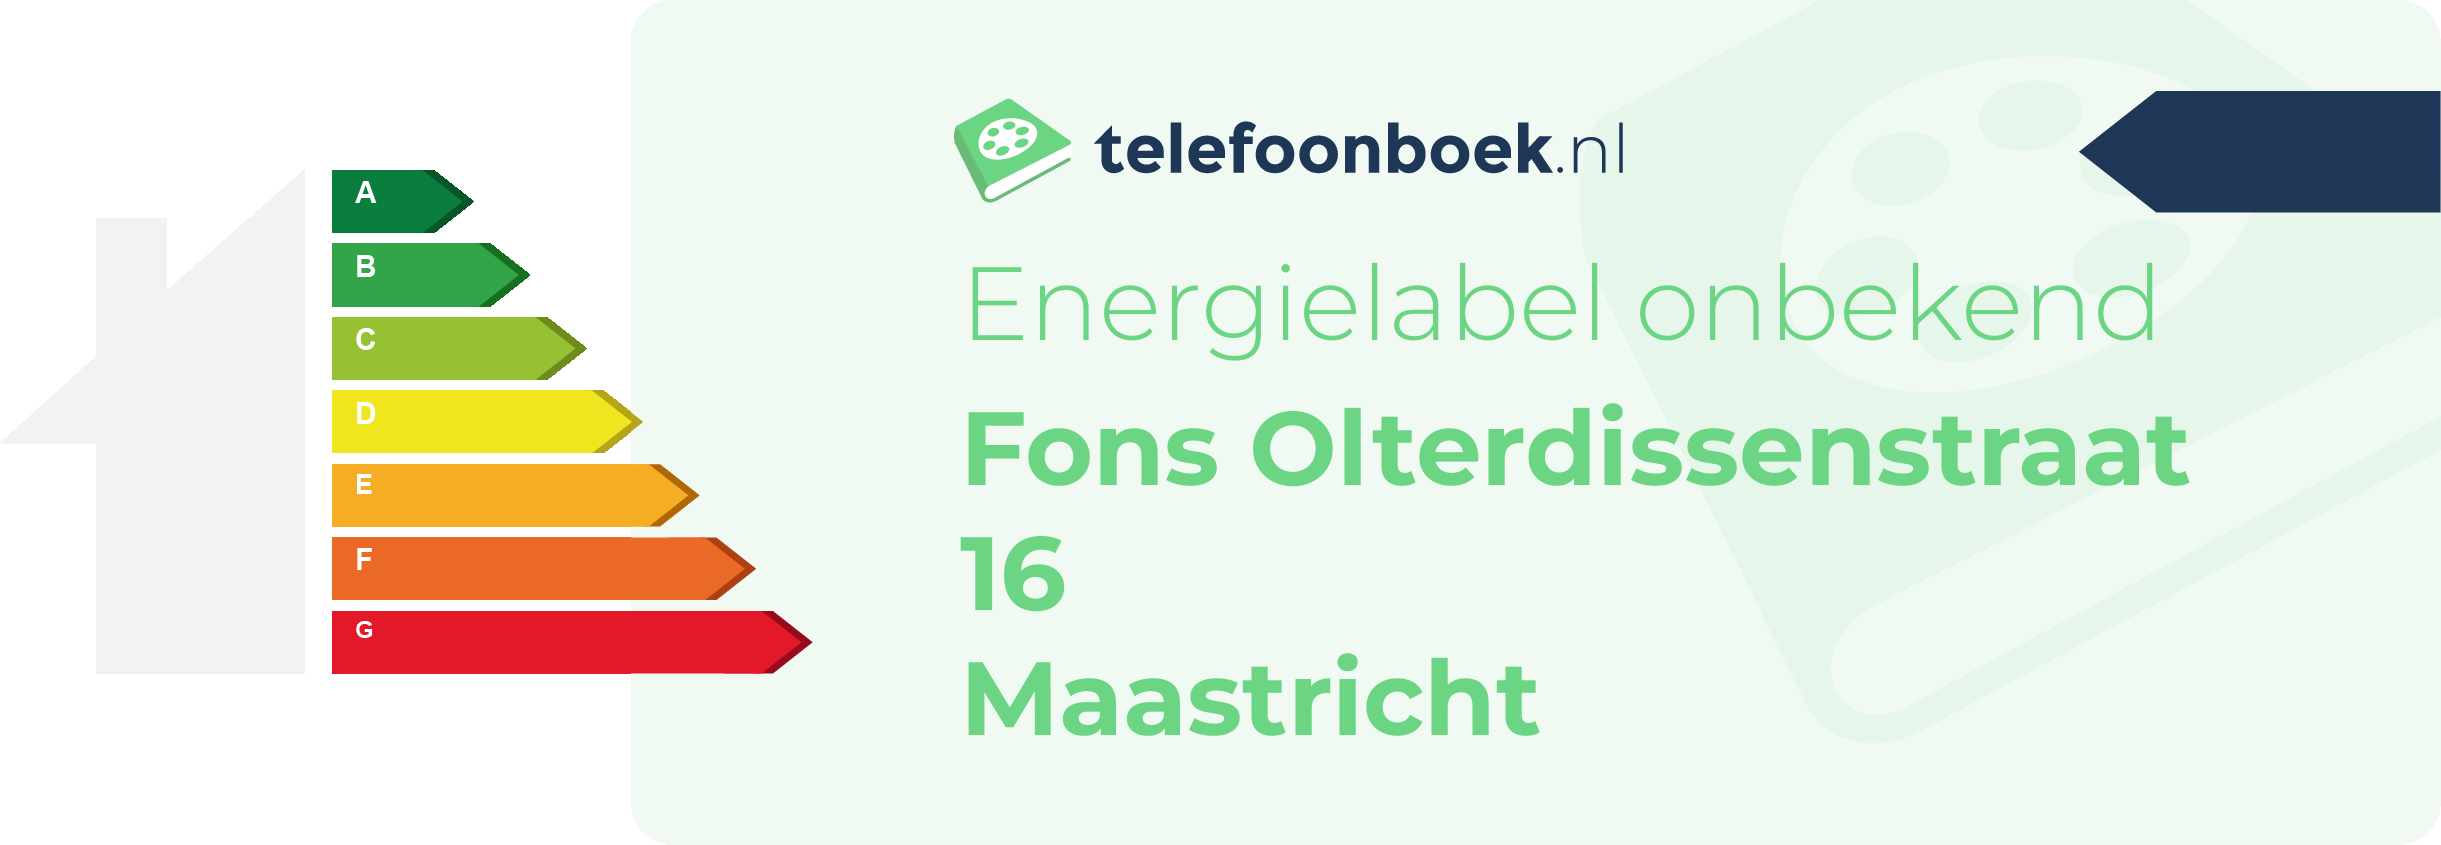 Energielabel Fons Olterdissenstraat 16 Maastricht